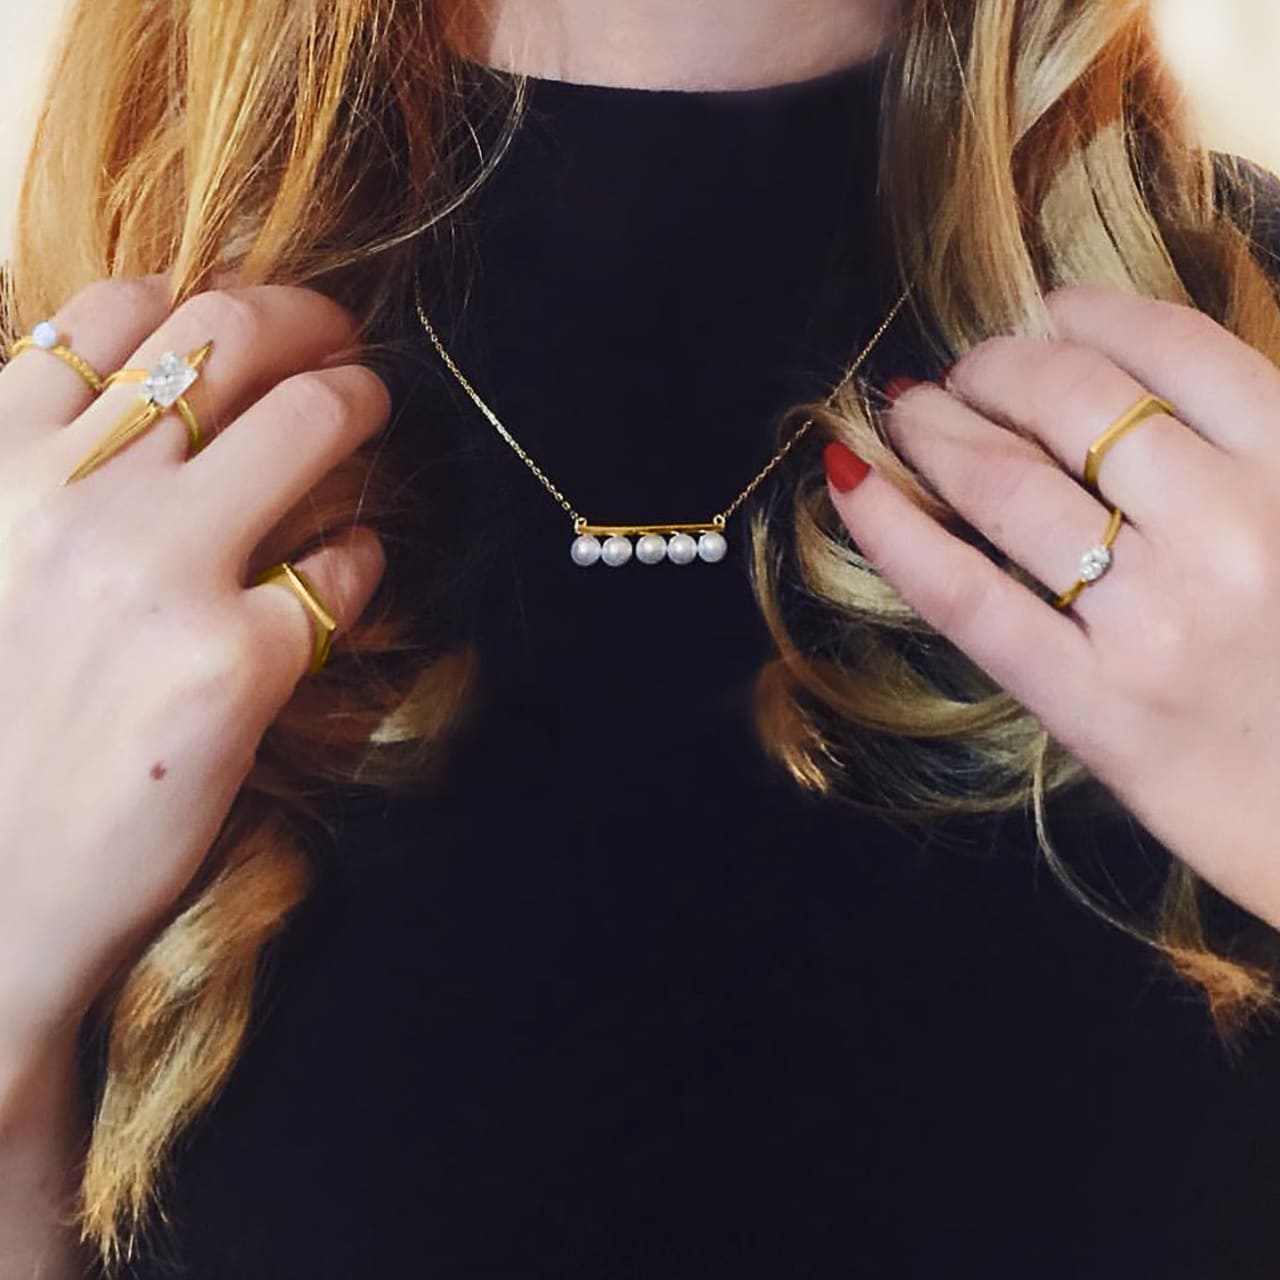 Moderne Perlenkette mit 18 Karat vergoldetem Sterling Silber zu mehreren Ringen aus vergoldetem Sterling Silber in Davos getragen